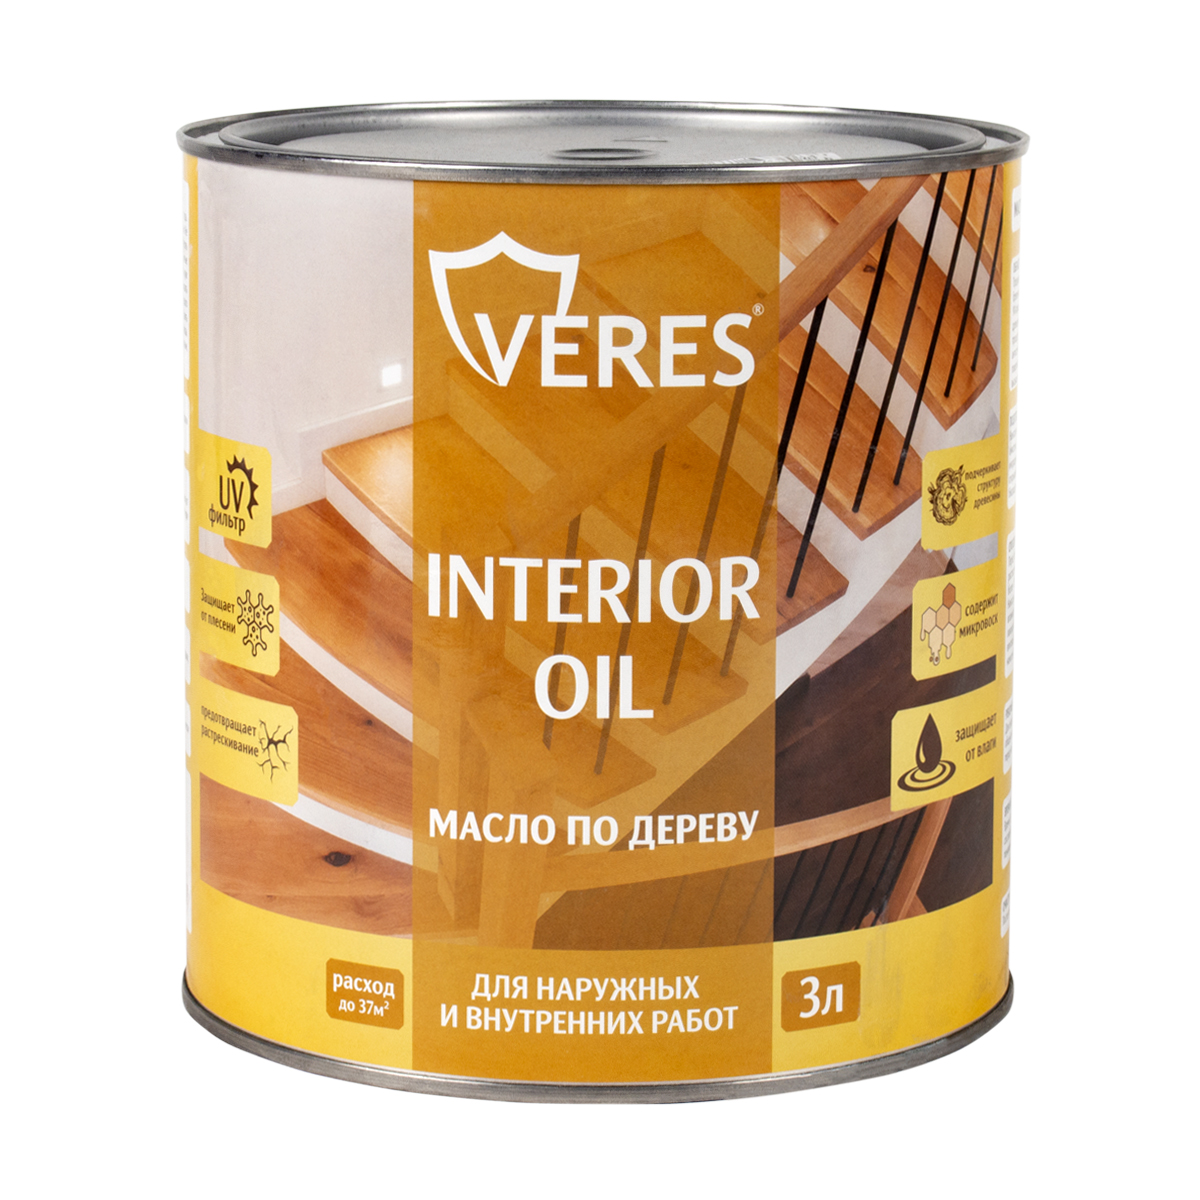 Масло для дерева Veres Interior Oil, 3 л, бесцветное